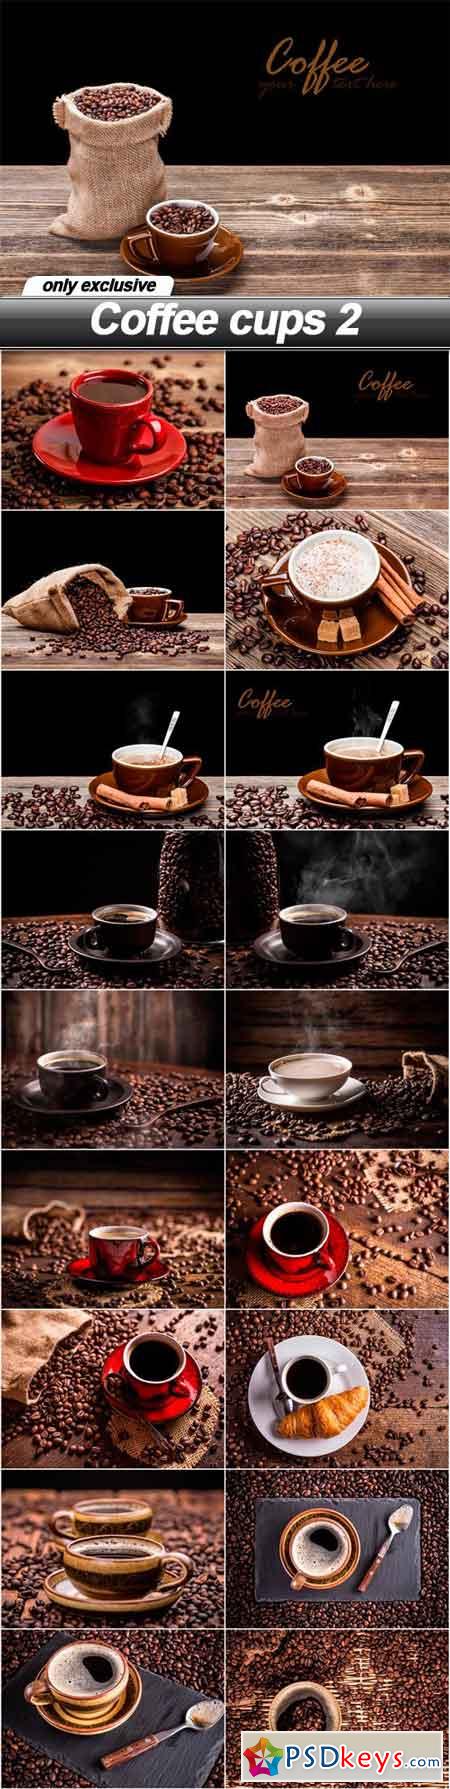 Coffee cups 2 - 18 UHQ JPEG